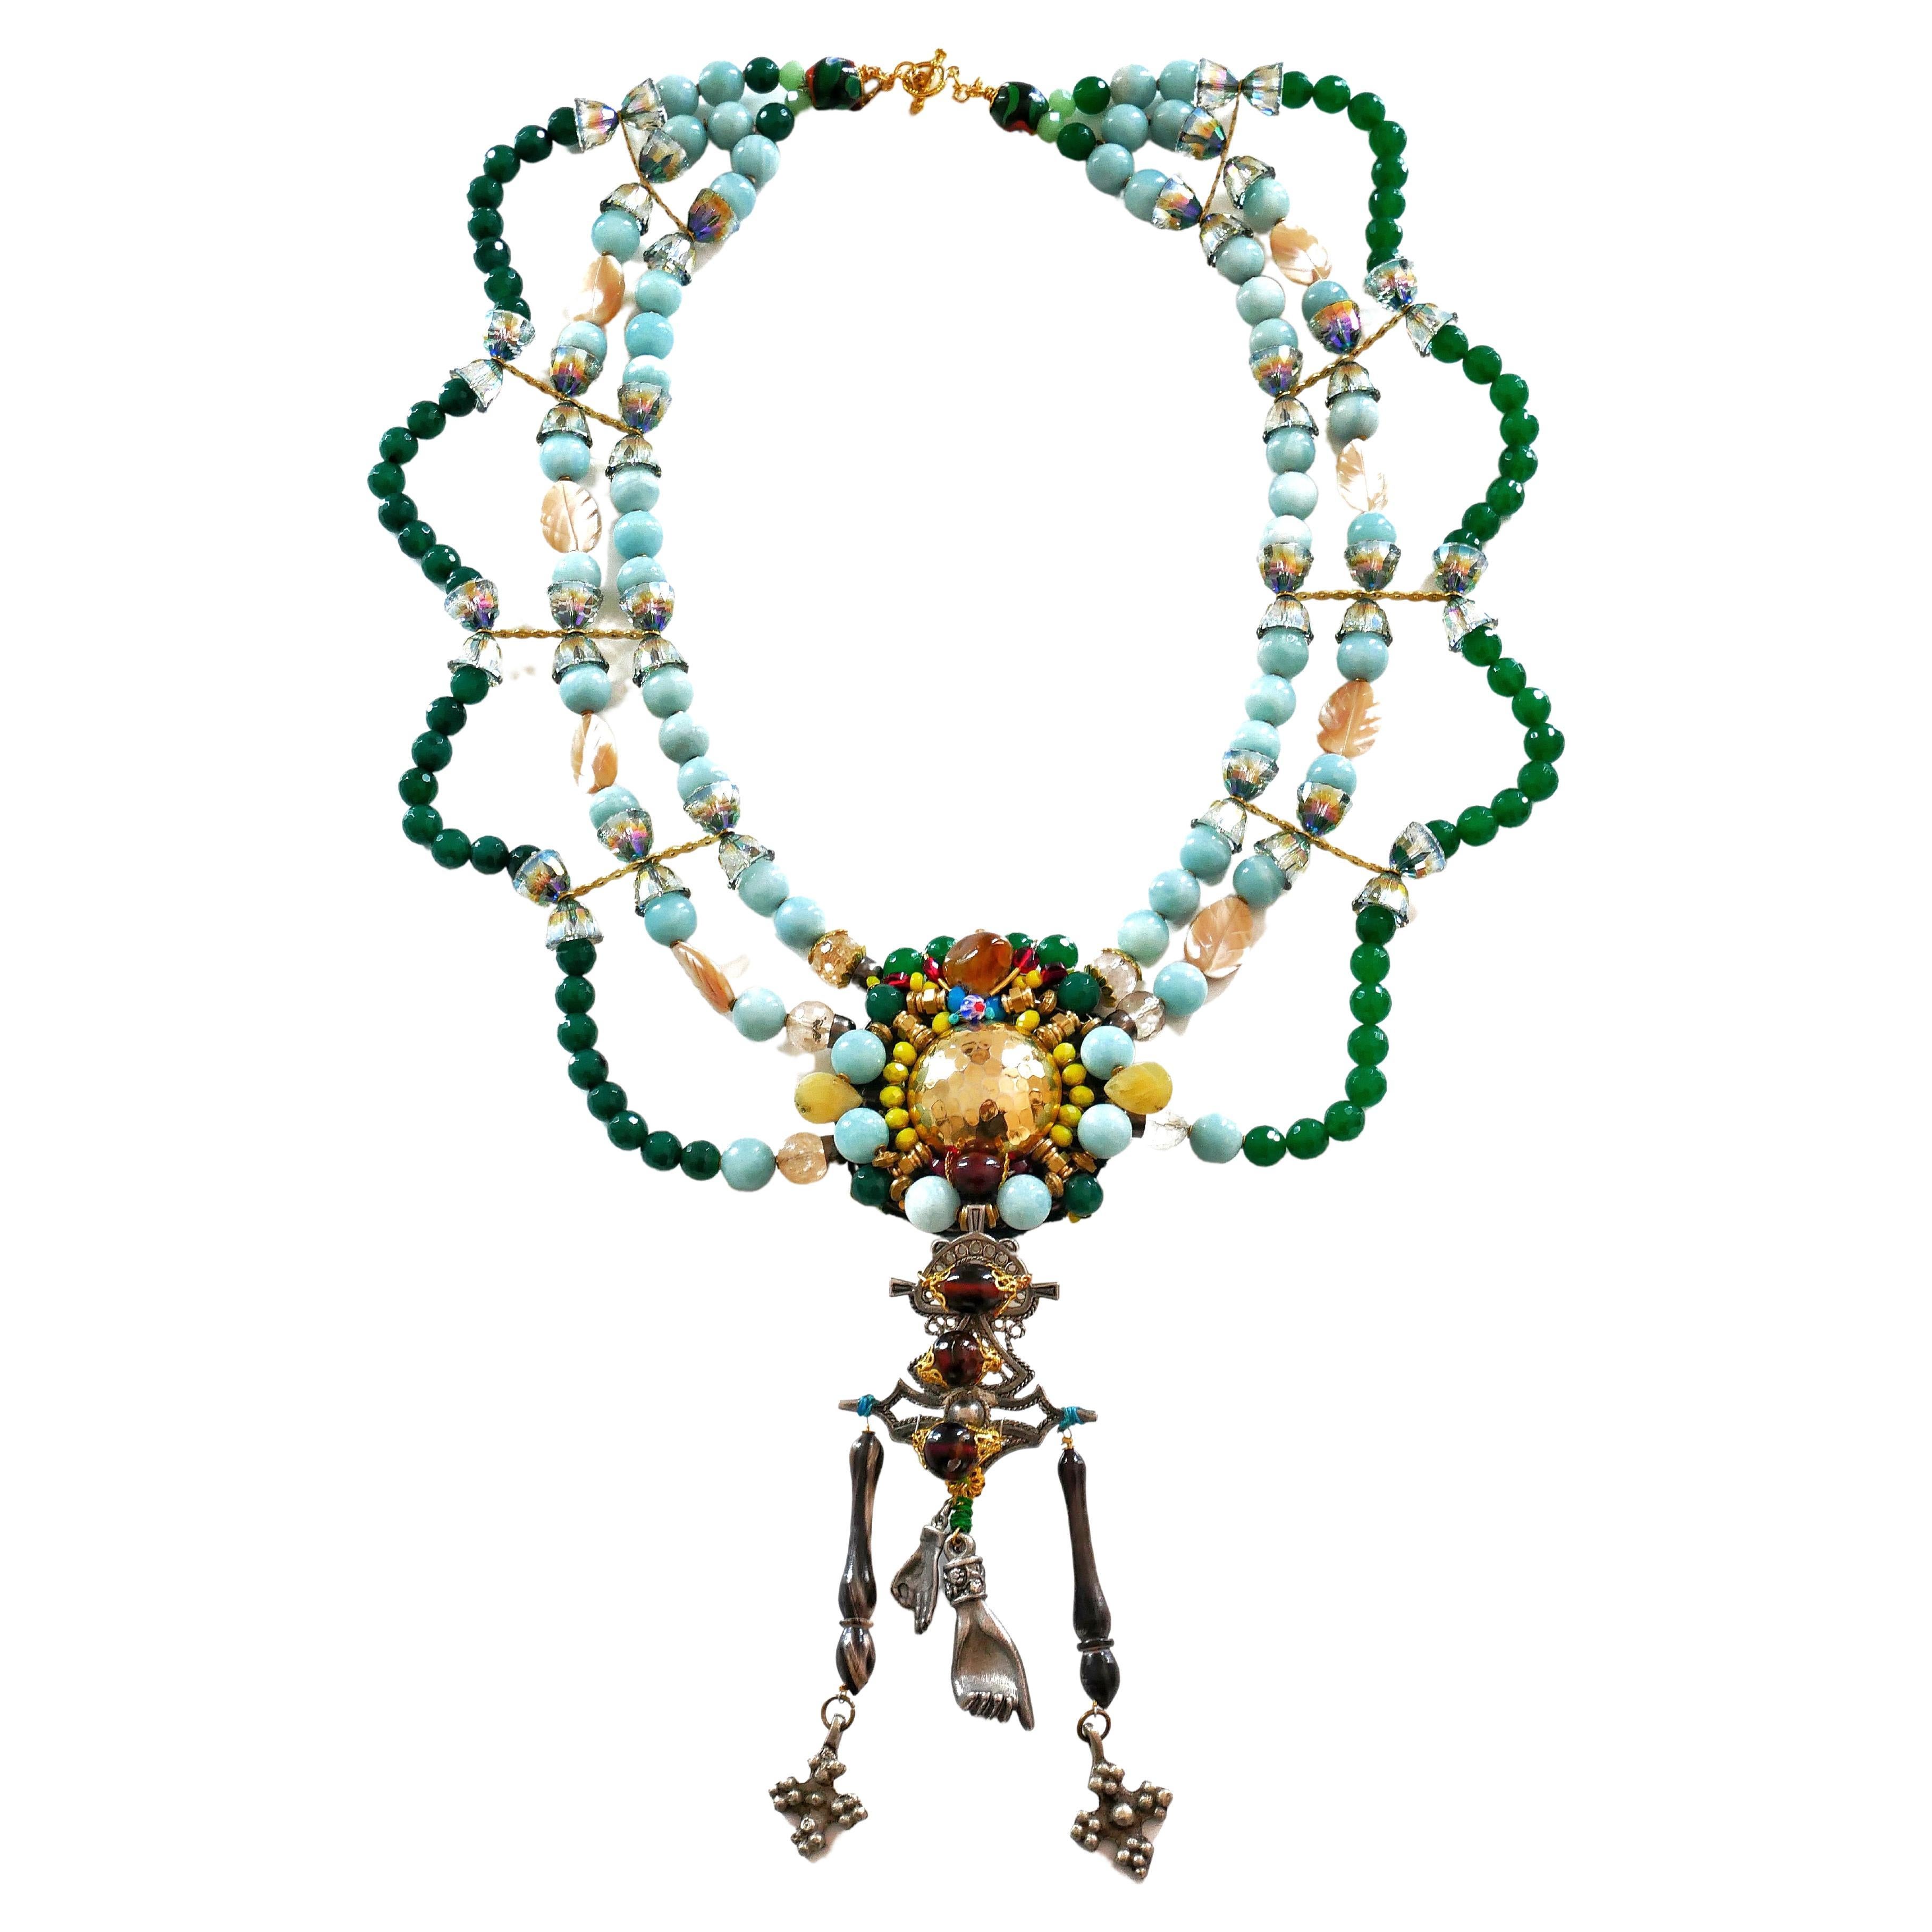 Mehrreihige Halskette aus Jade, Amazonit und Swarovski Kristallen mit Verzierungen